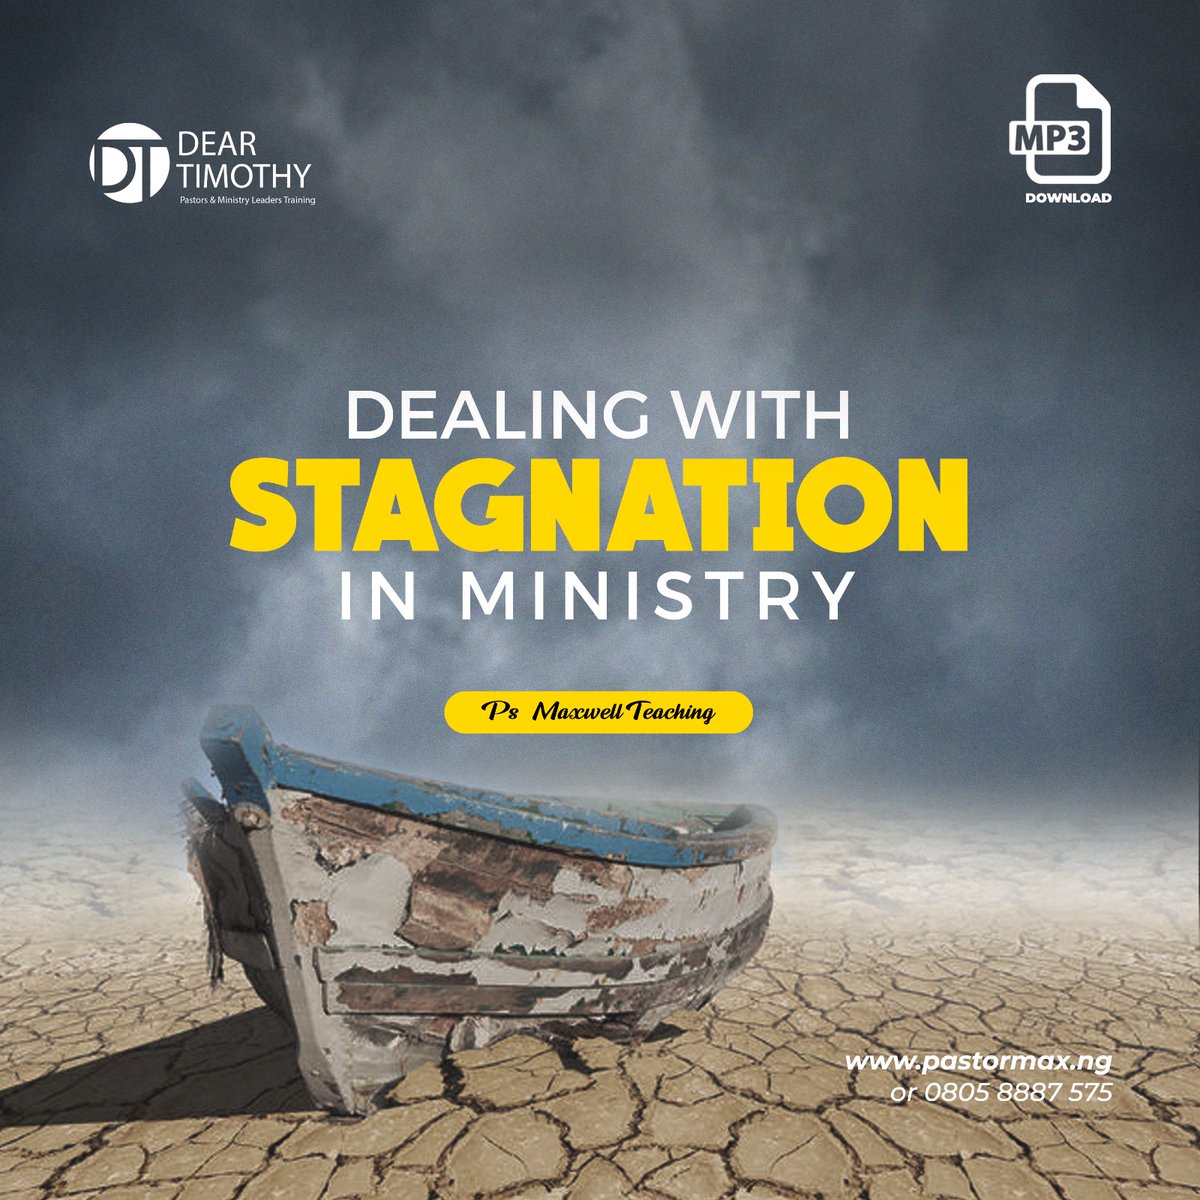 Listen/download: bit.ly/3LoKkEt #DearTimothy #pastorsandleaders